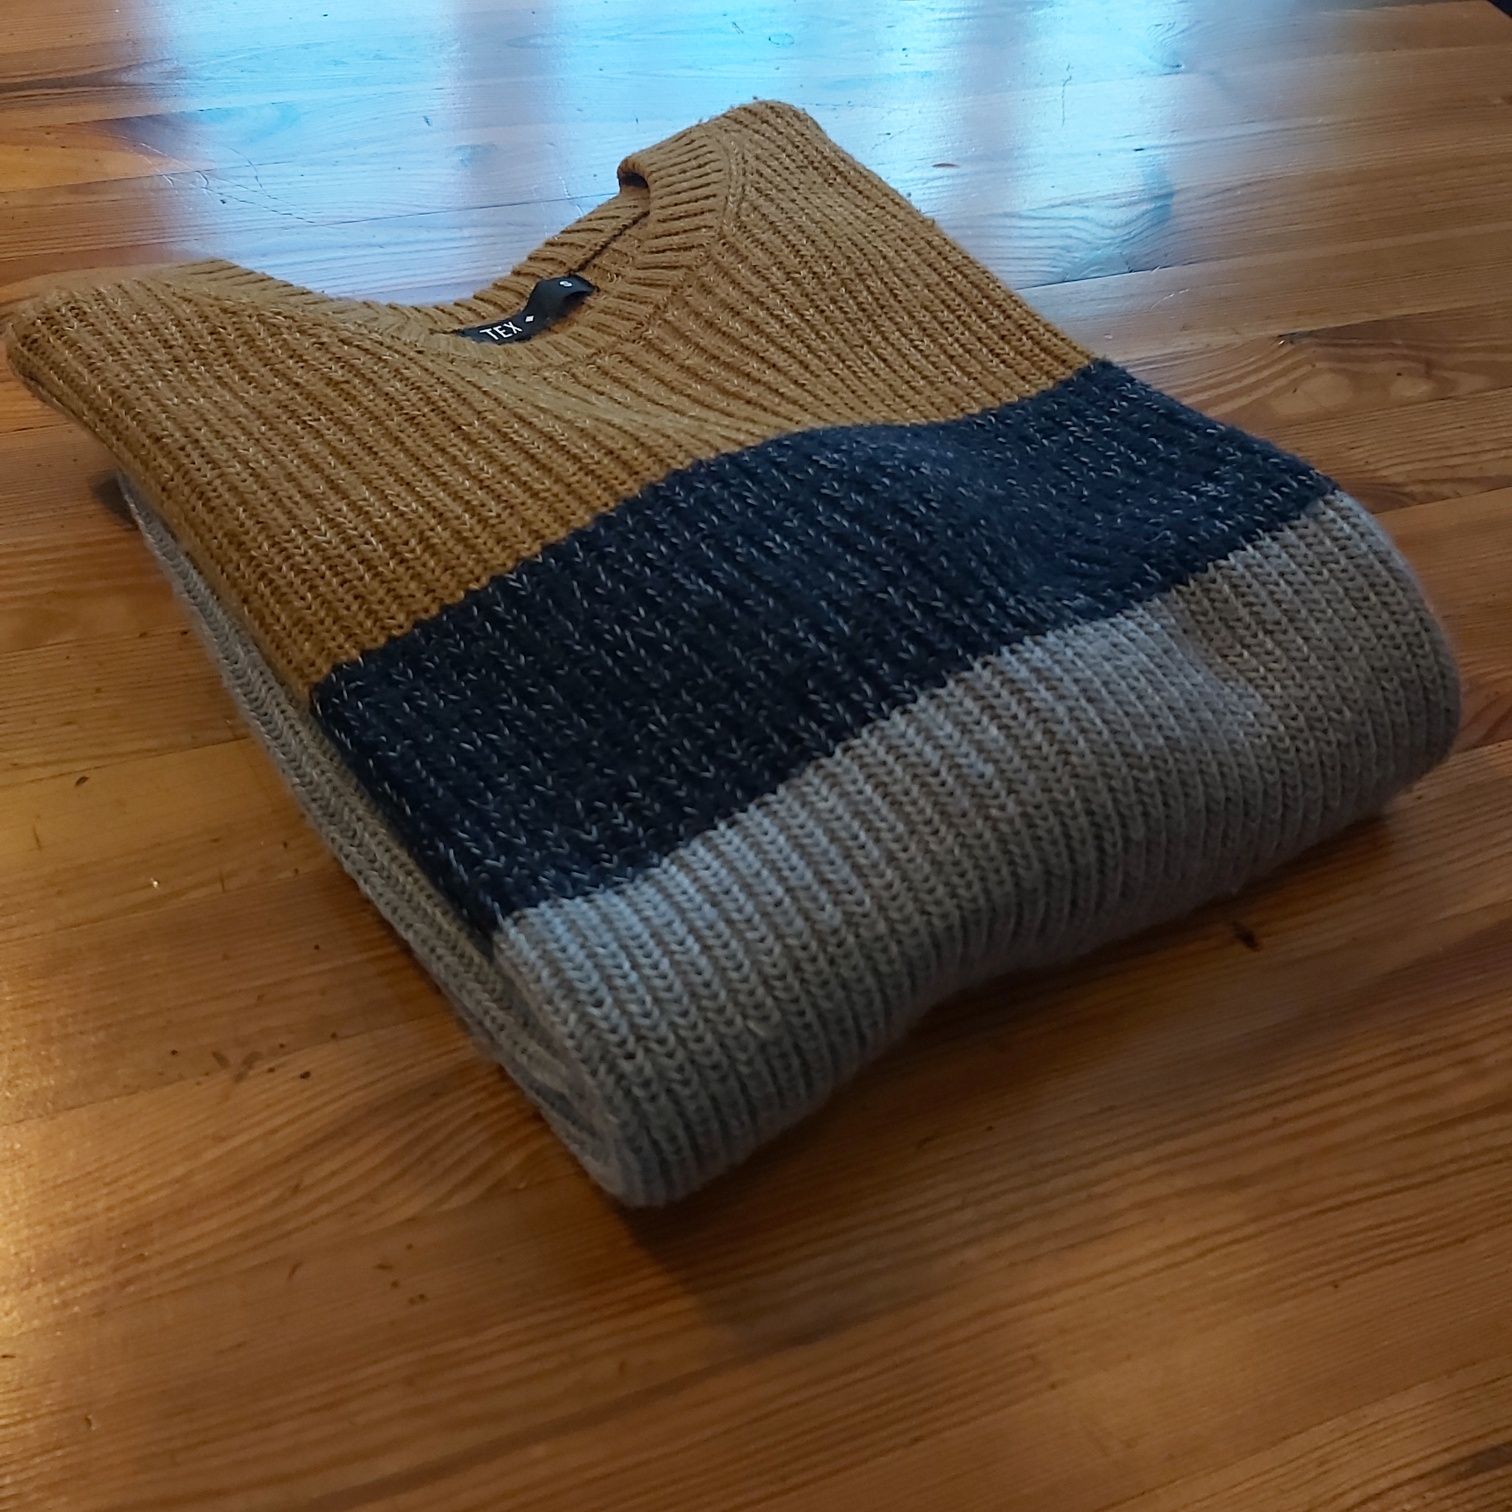 JAK NOWY - Gruby sweter pleciony zimowy ciepły S